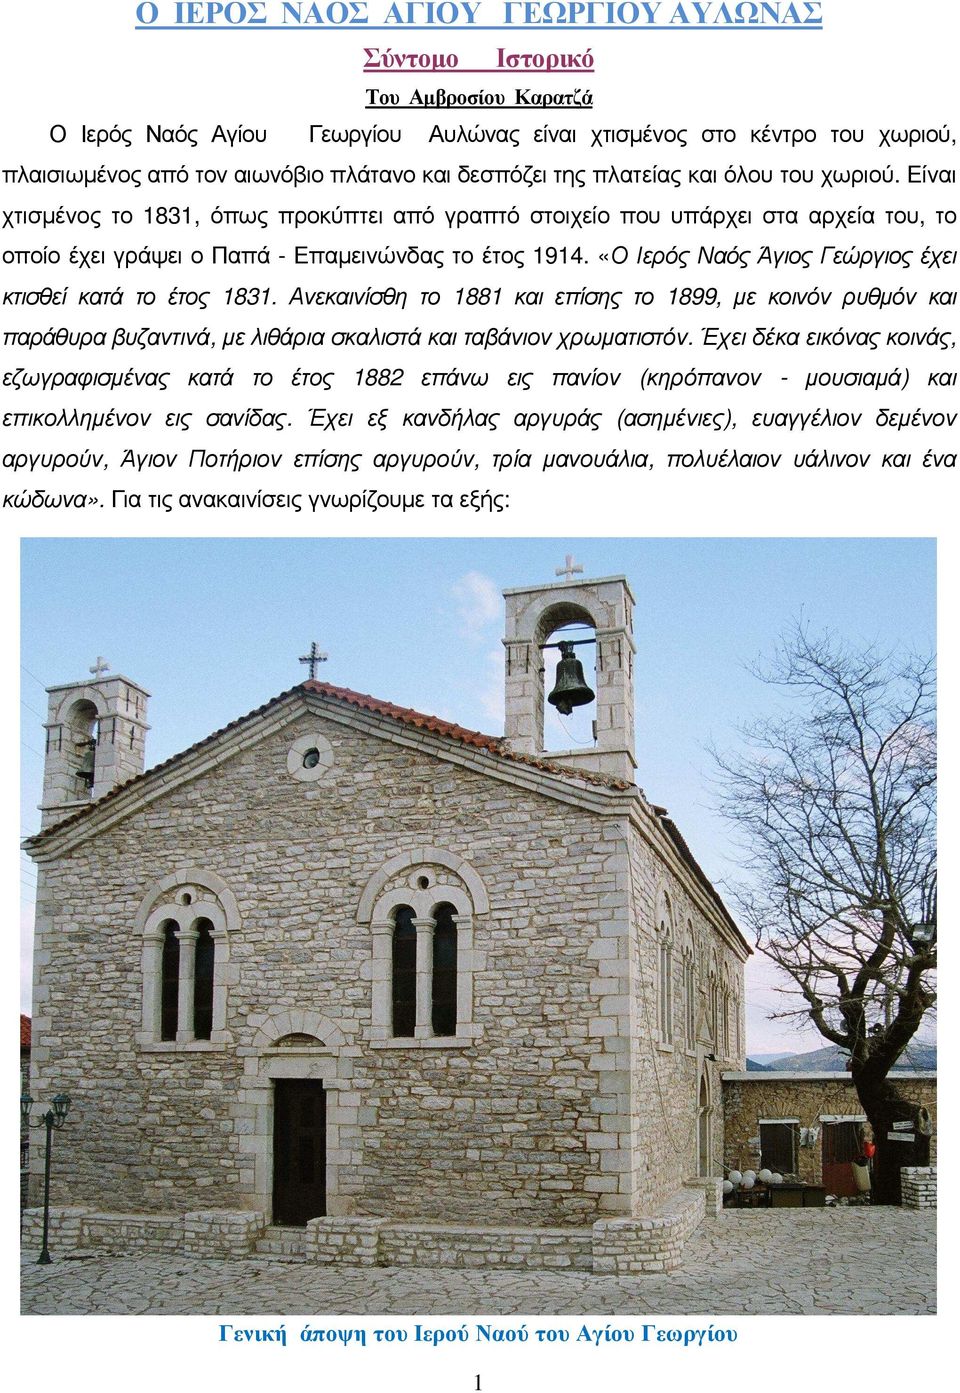 «Ο Ιερός Ναός Άγιος Γεώργιος έχει κτισθεί κατά το έτος 1831. Ανεκαινίσθη το 1881 και επίσης το 1899, µε κοινόν ρυθµόν και παράθυρα βυζαντινά, µε λιθάρια σκαλιστά και ταβάνιον χρωµατιστόν.